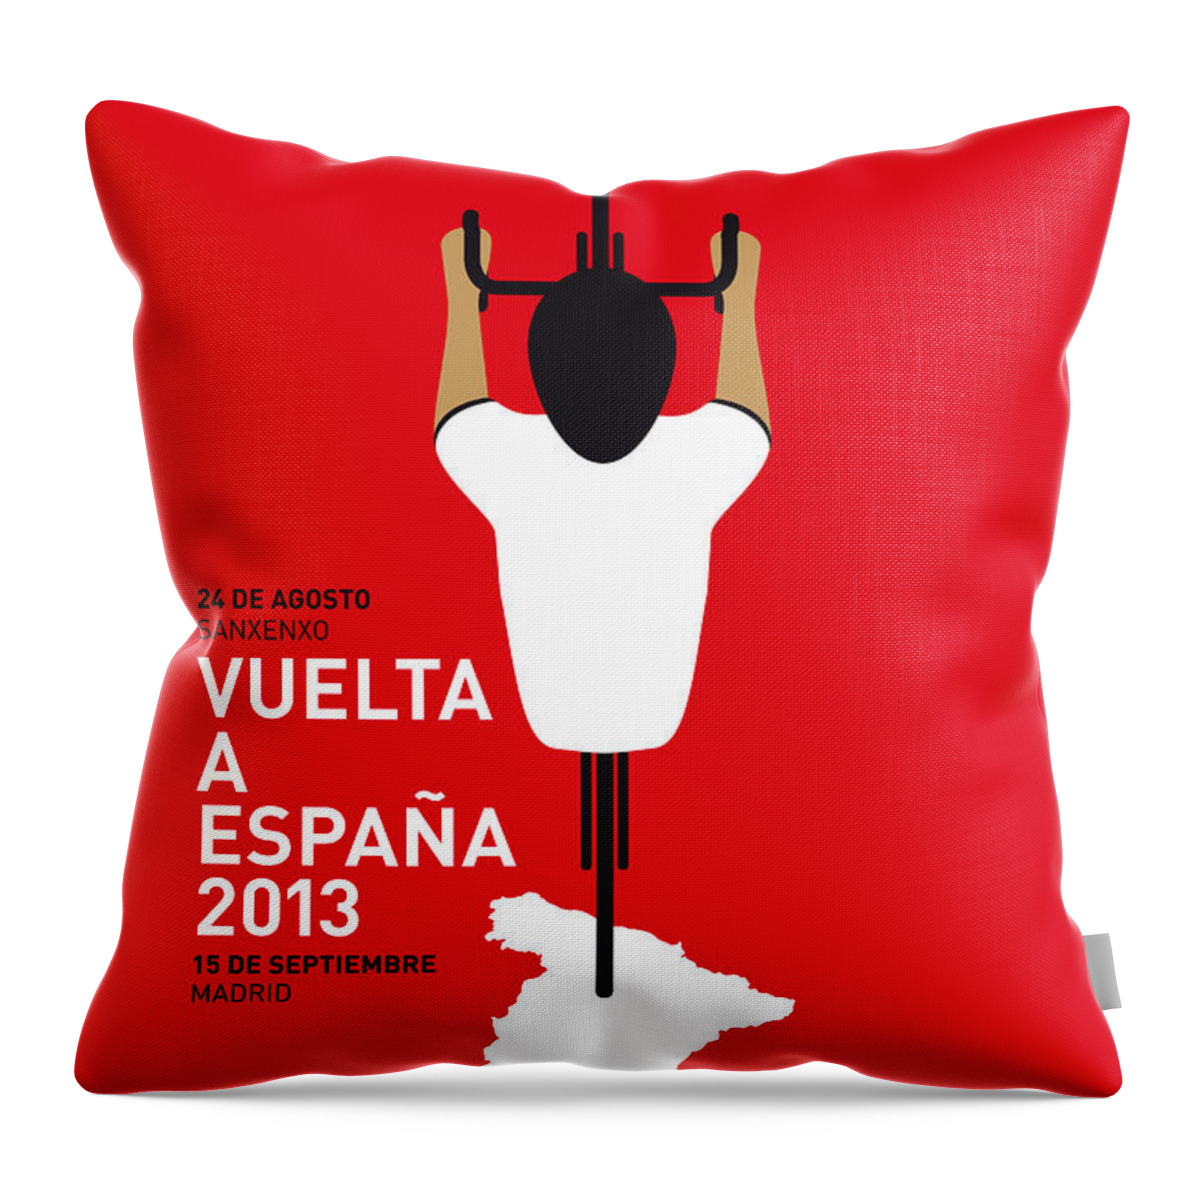 2013 Throw Pillow featuring the digital art My Vuelta A Espana Minimal Poster - 2013 by Chungkong Art